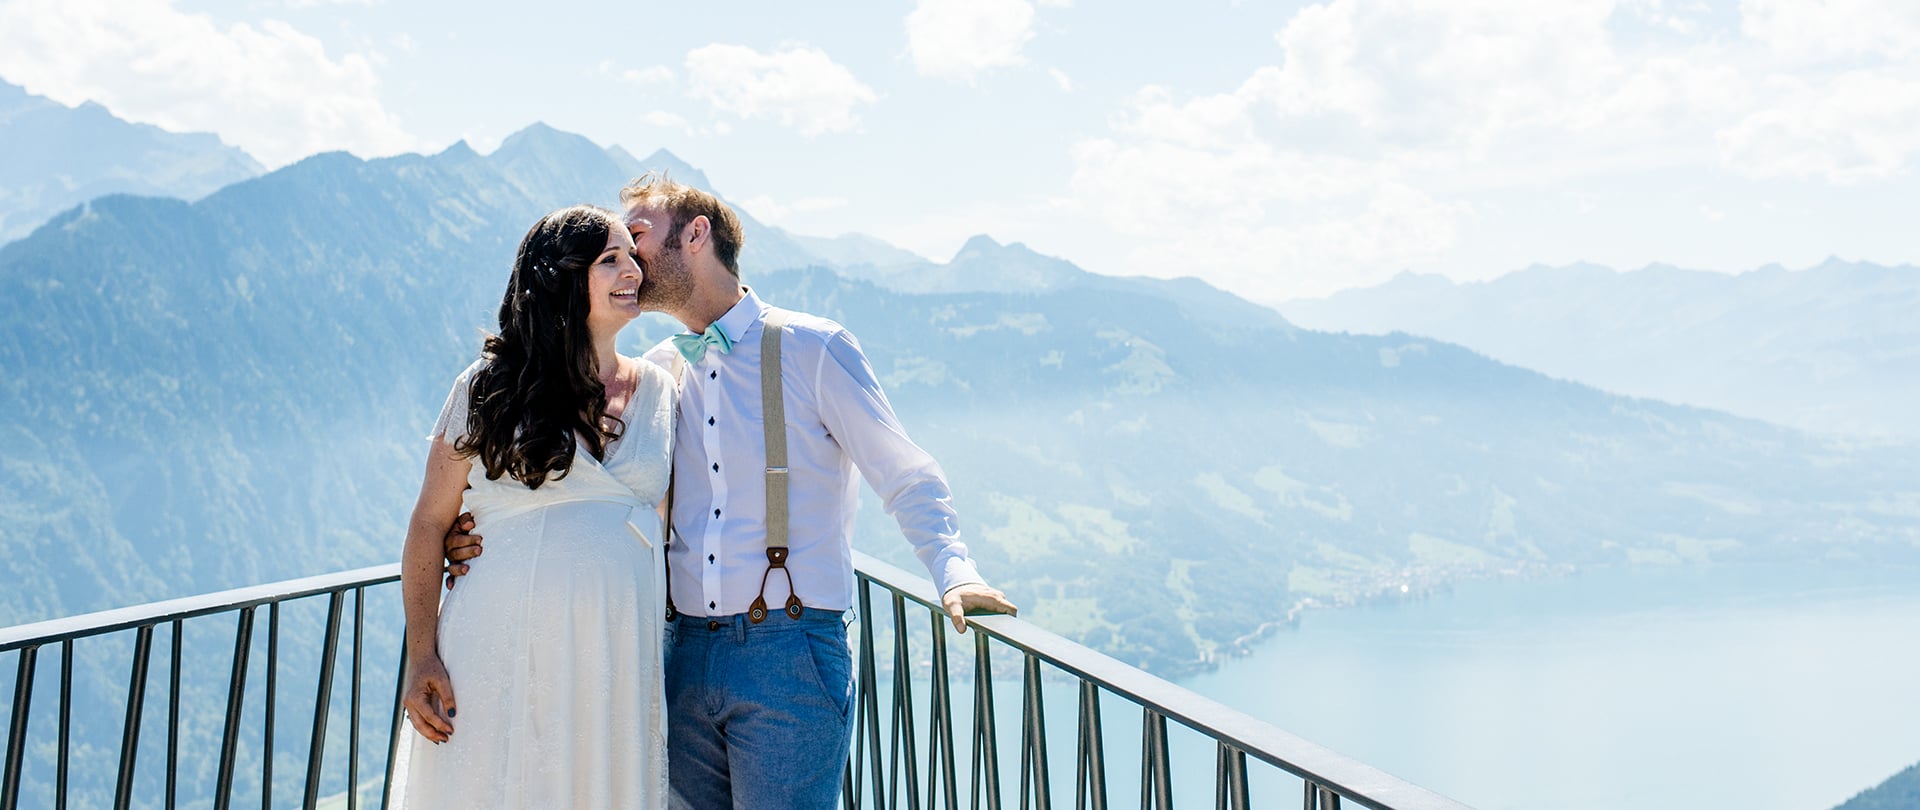 Véronique and Hannes Wedding Video Filmed at Interlaken, Switzerland